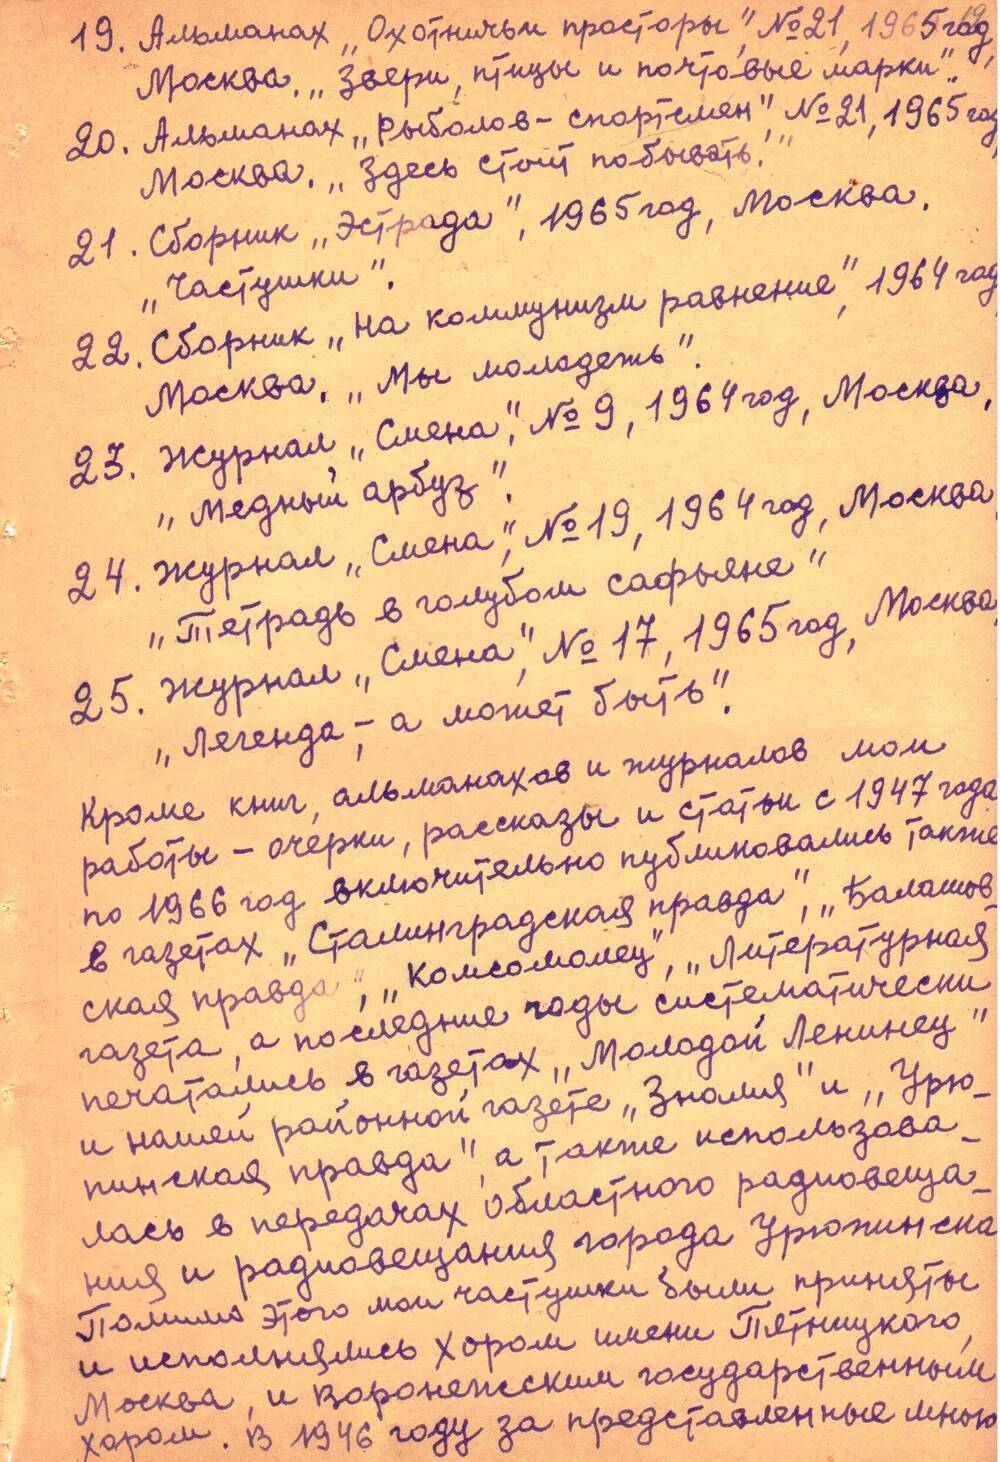 Досье краеведа Б.С. Лащилина на 35 листах